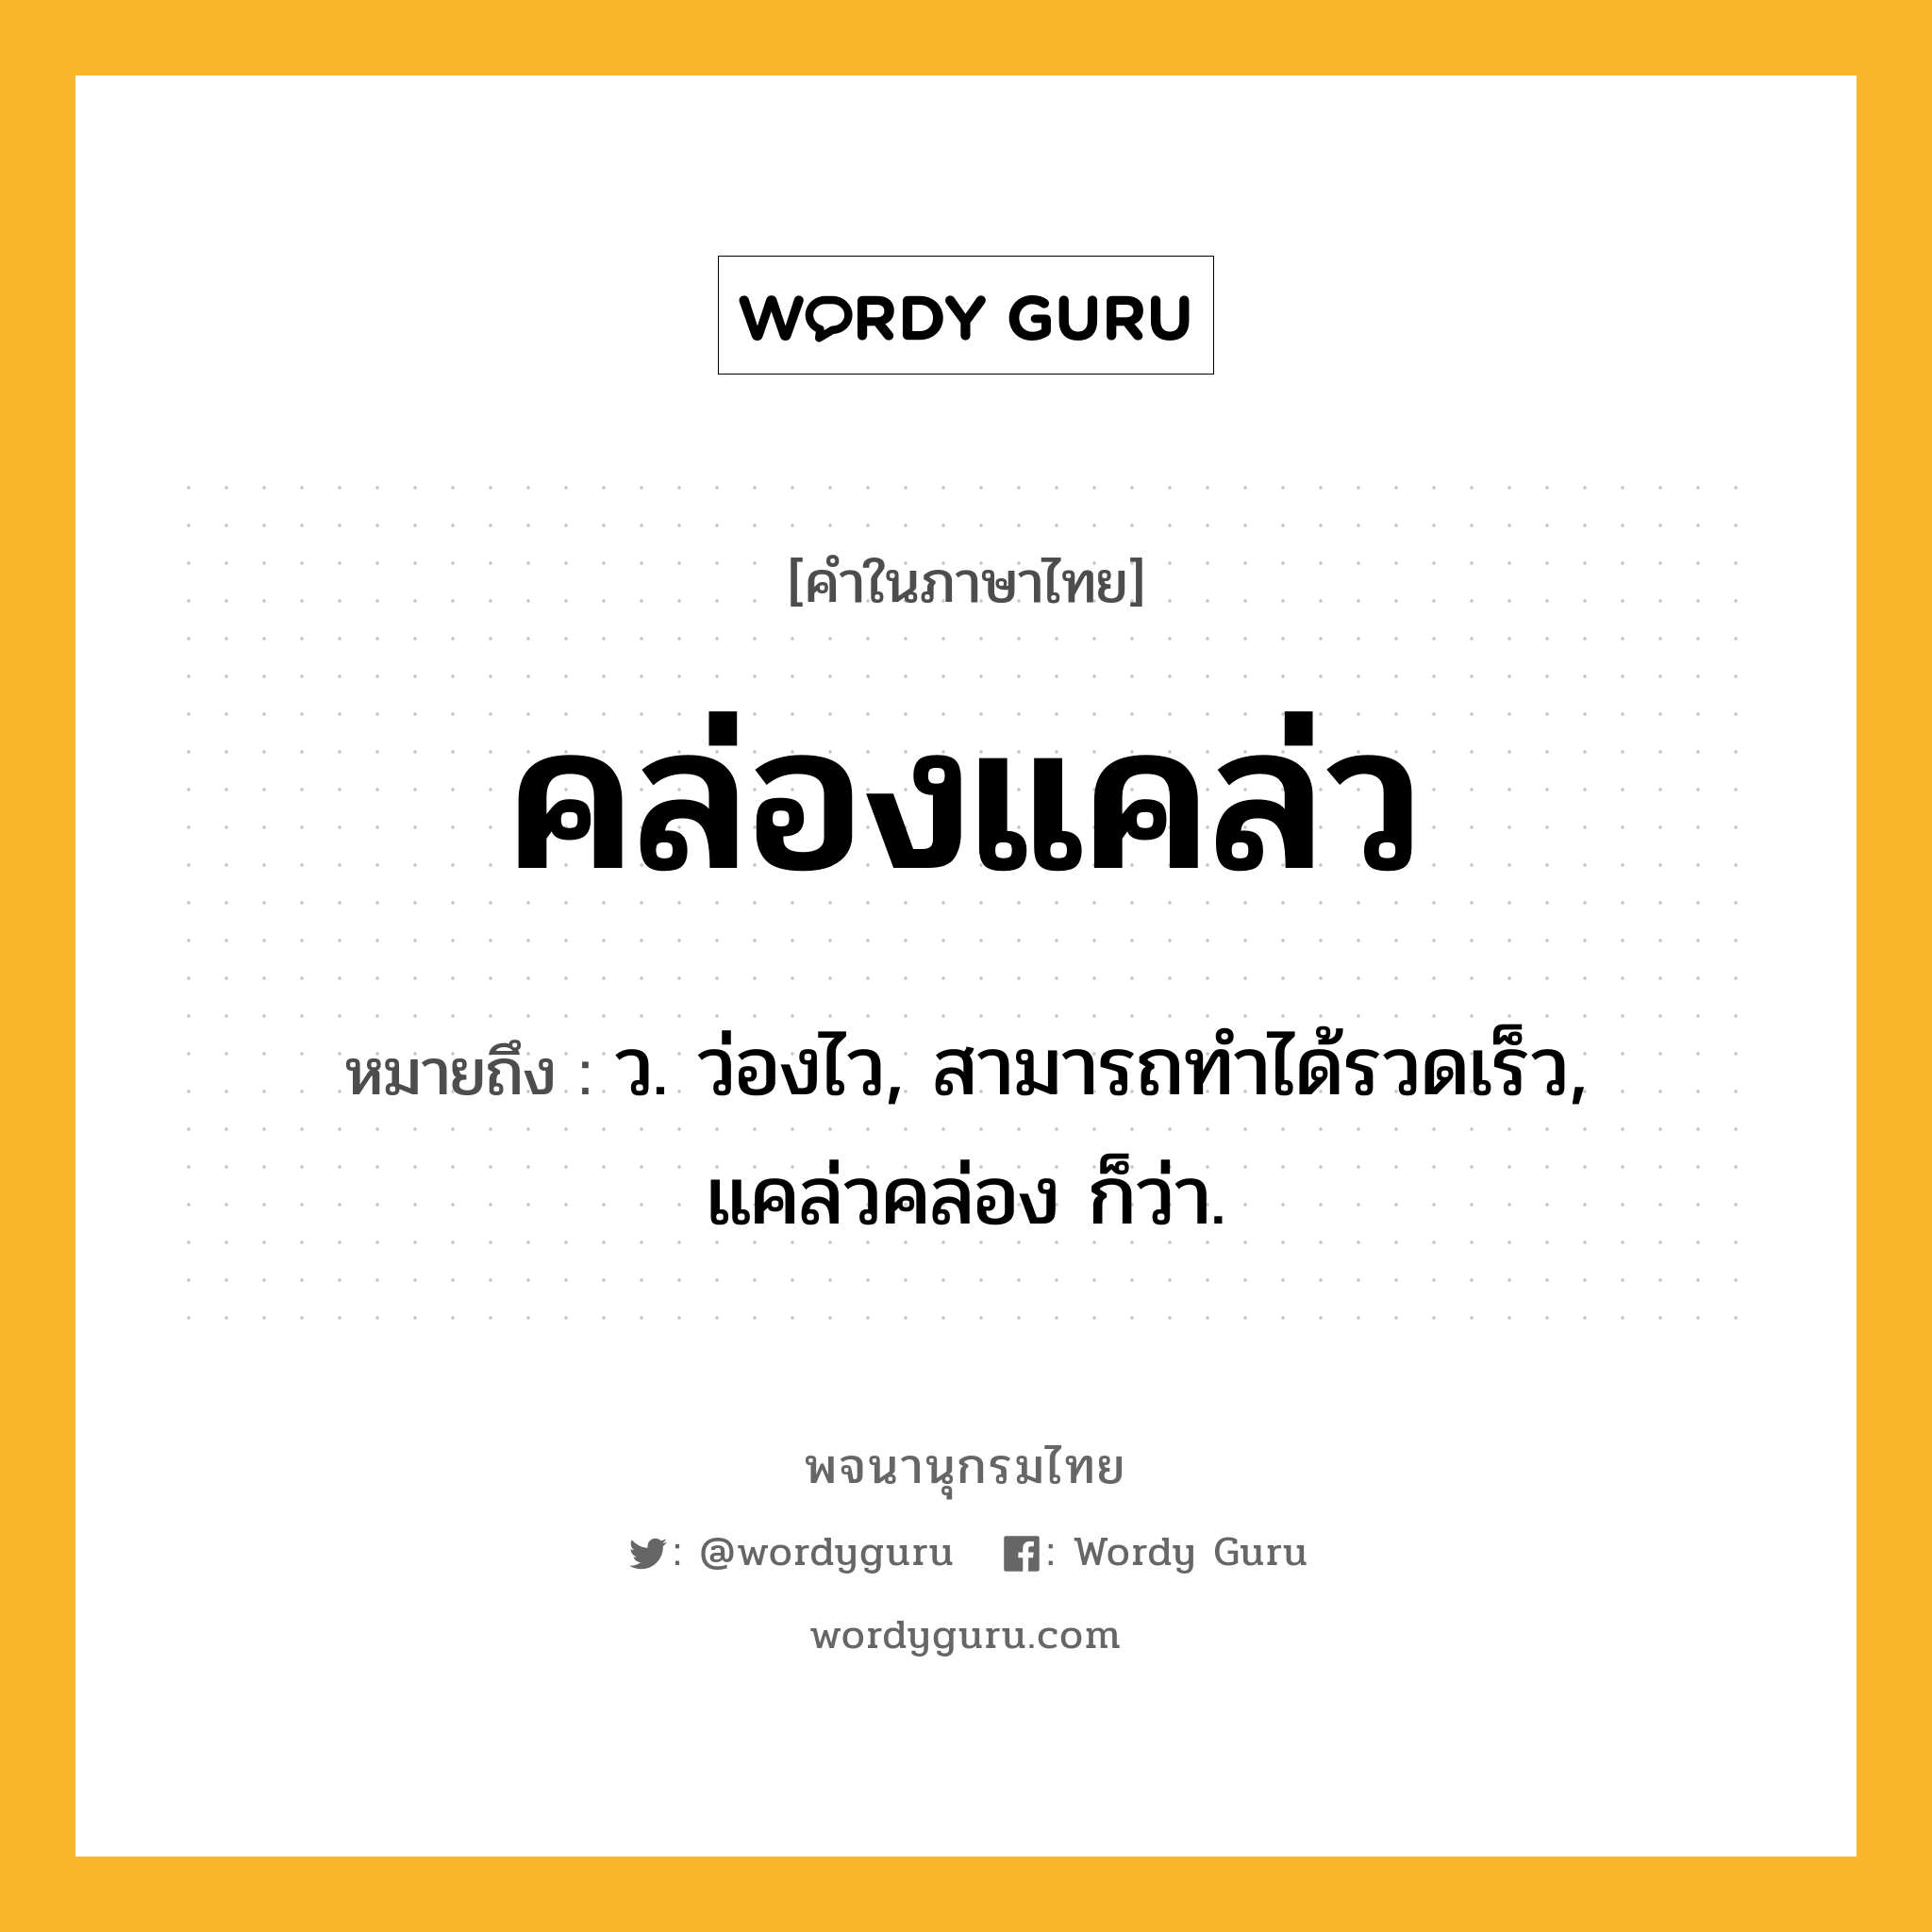 คล่องแคล่ว ความหมาย หมายถึงอะไร?, คำในภาษาไทย คล่องแคล่ว หมายถึง ว. ว่องไว, สามารถทําได้รวดเร็ว, แคล่วคล่อง ก็ว่า.